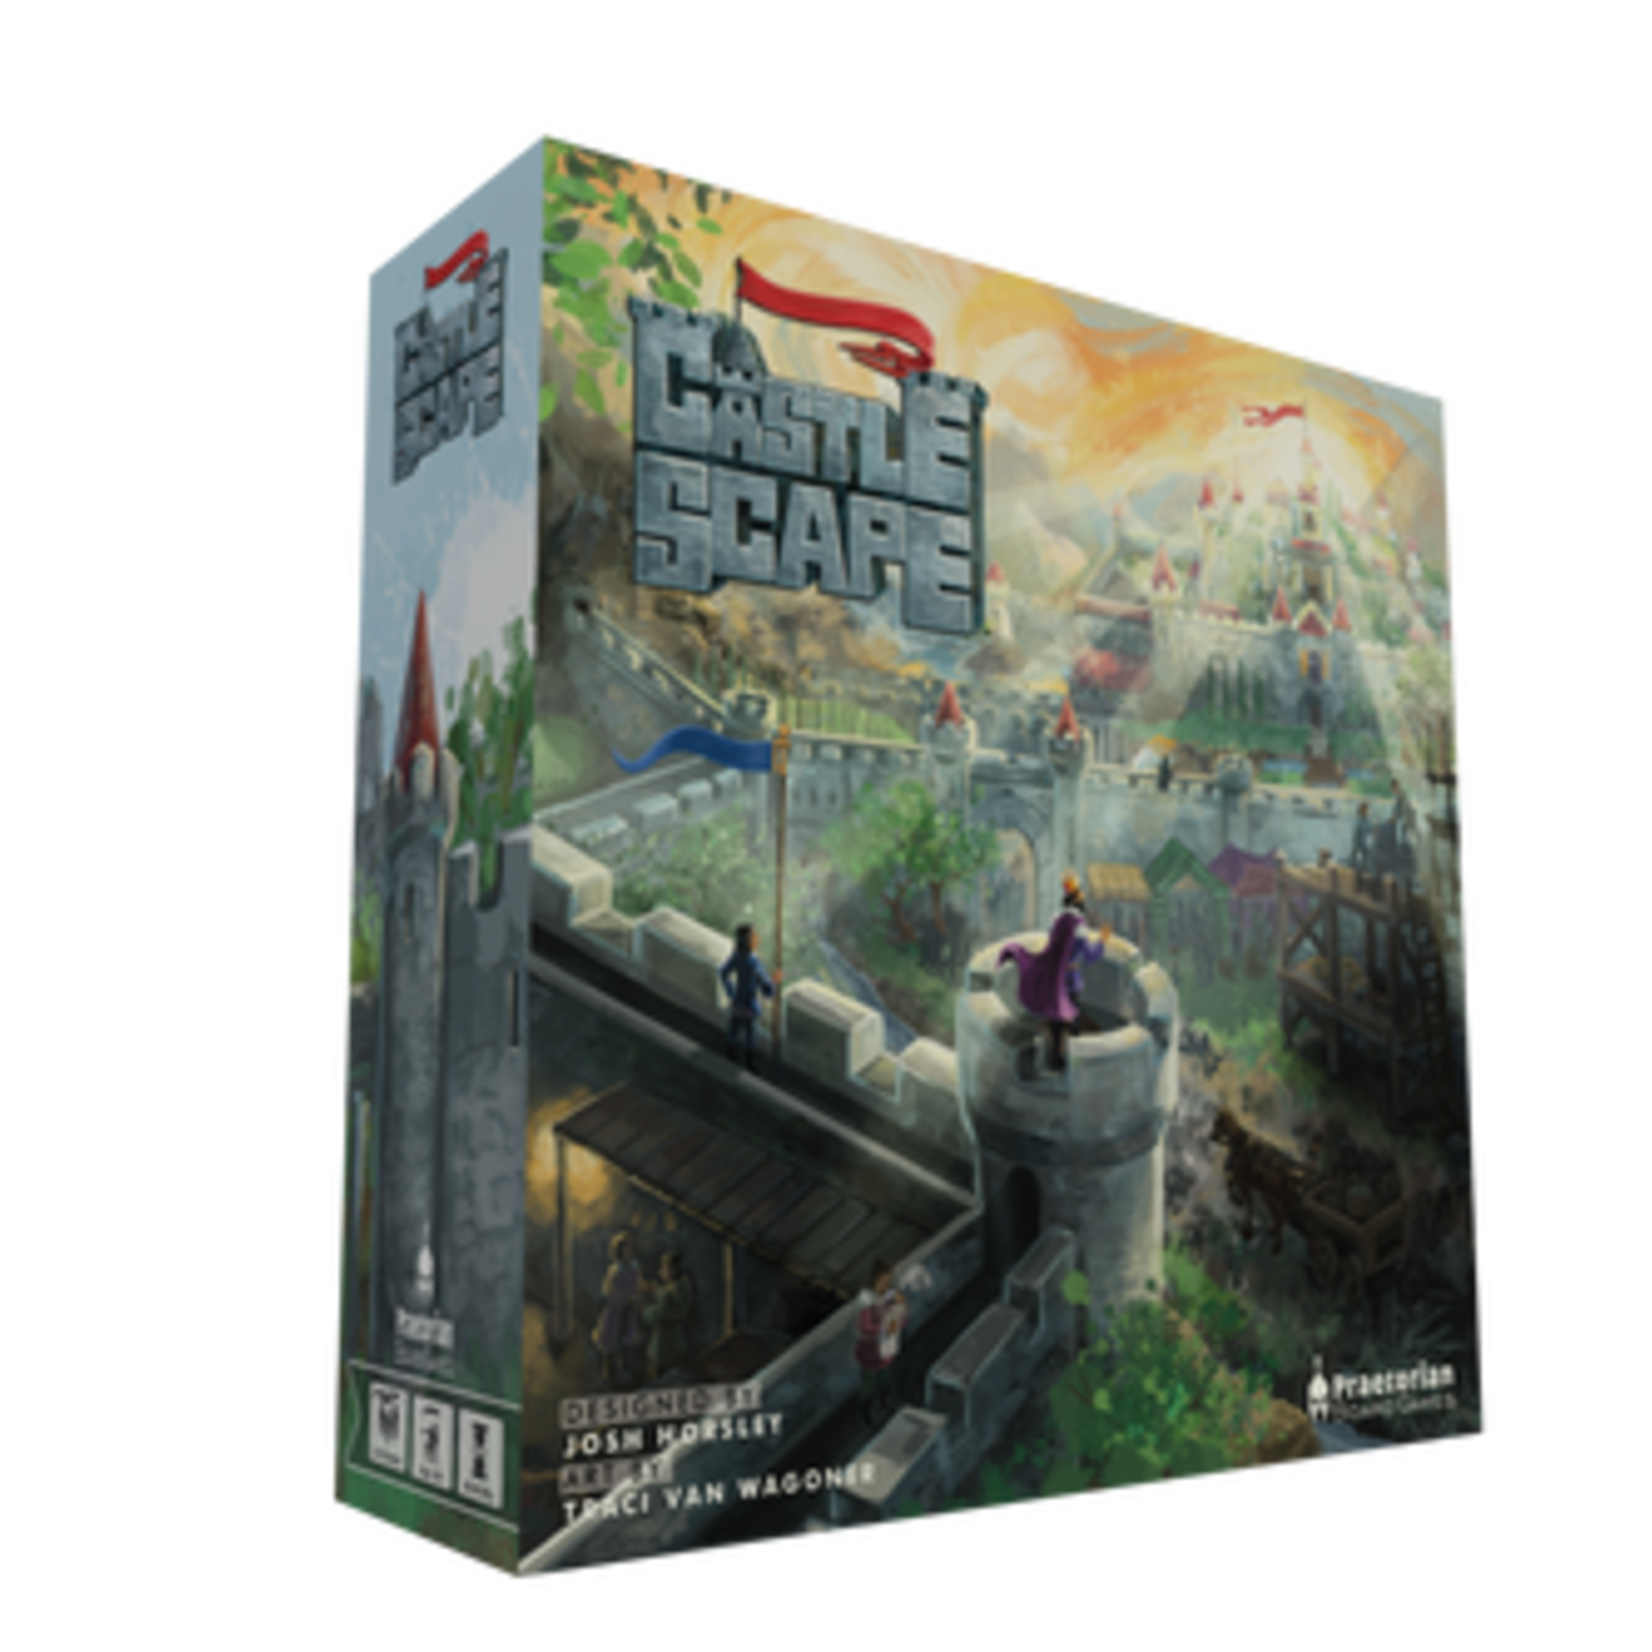 Praetorian Board Games CastleScape Board Game - Kickstarter Edition